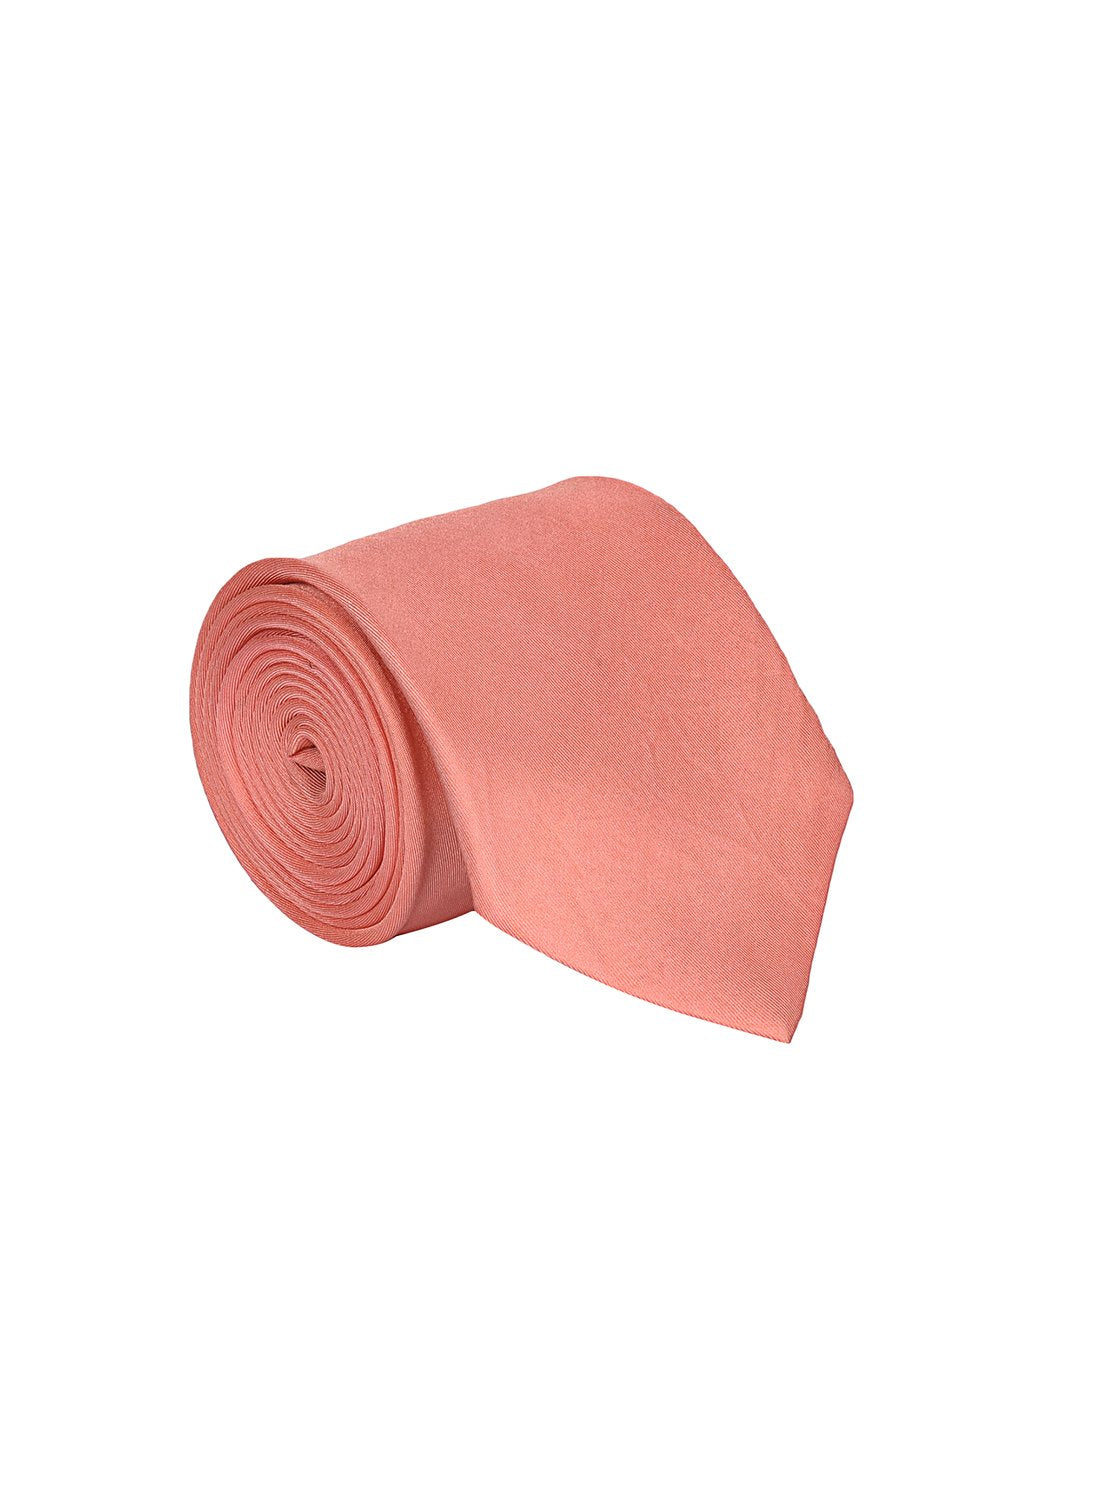 Rose Pink color silk tie for men